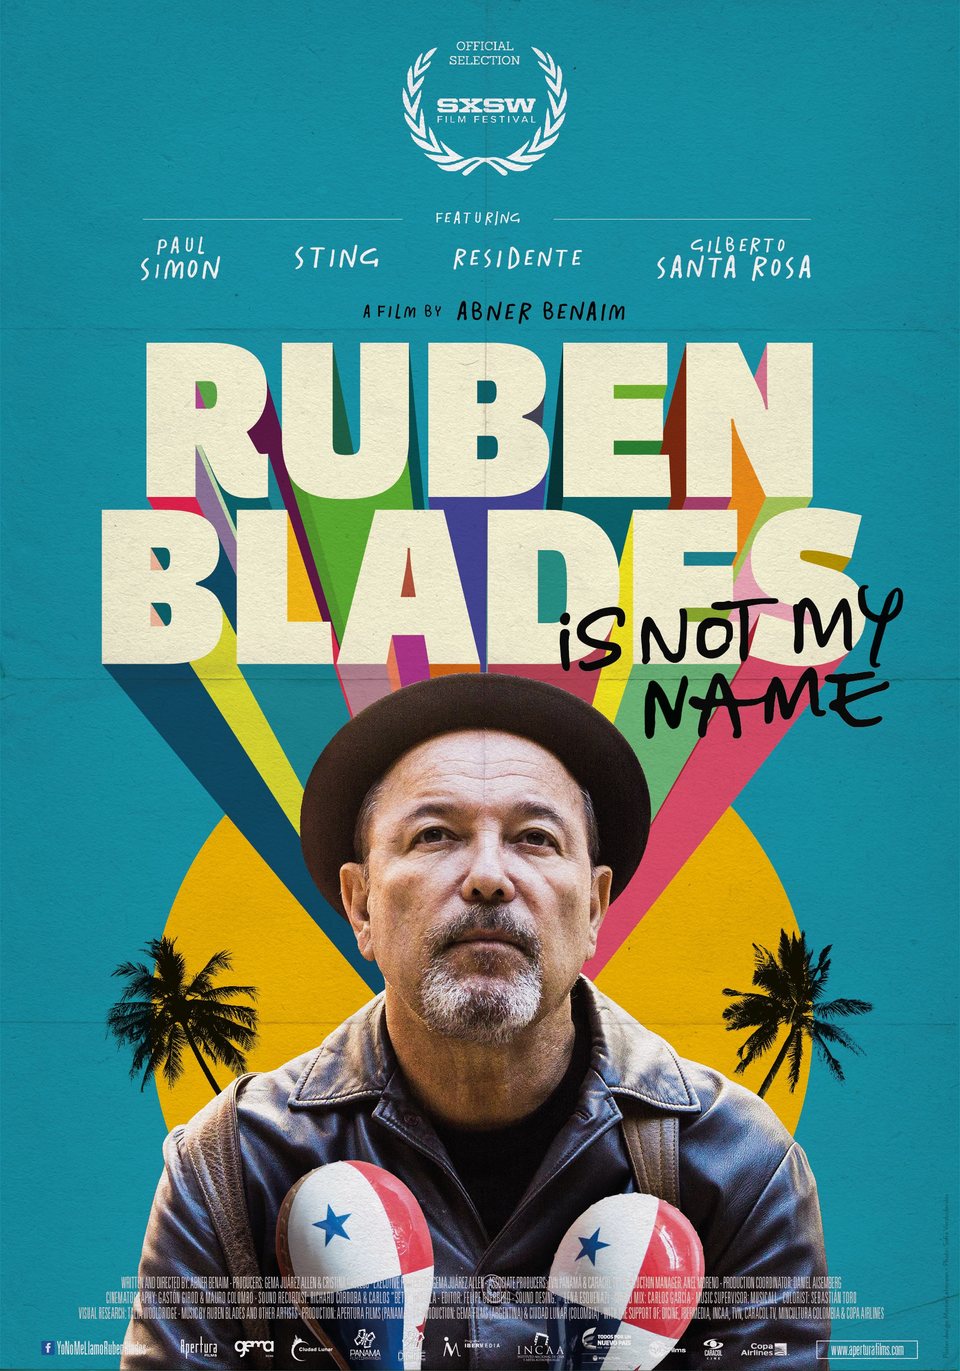 Cartel de Yo no me llamo Rubén Blade - Poster 'Ruben Blades Is Not My Name'